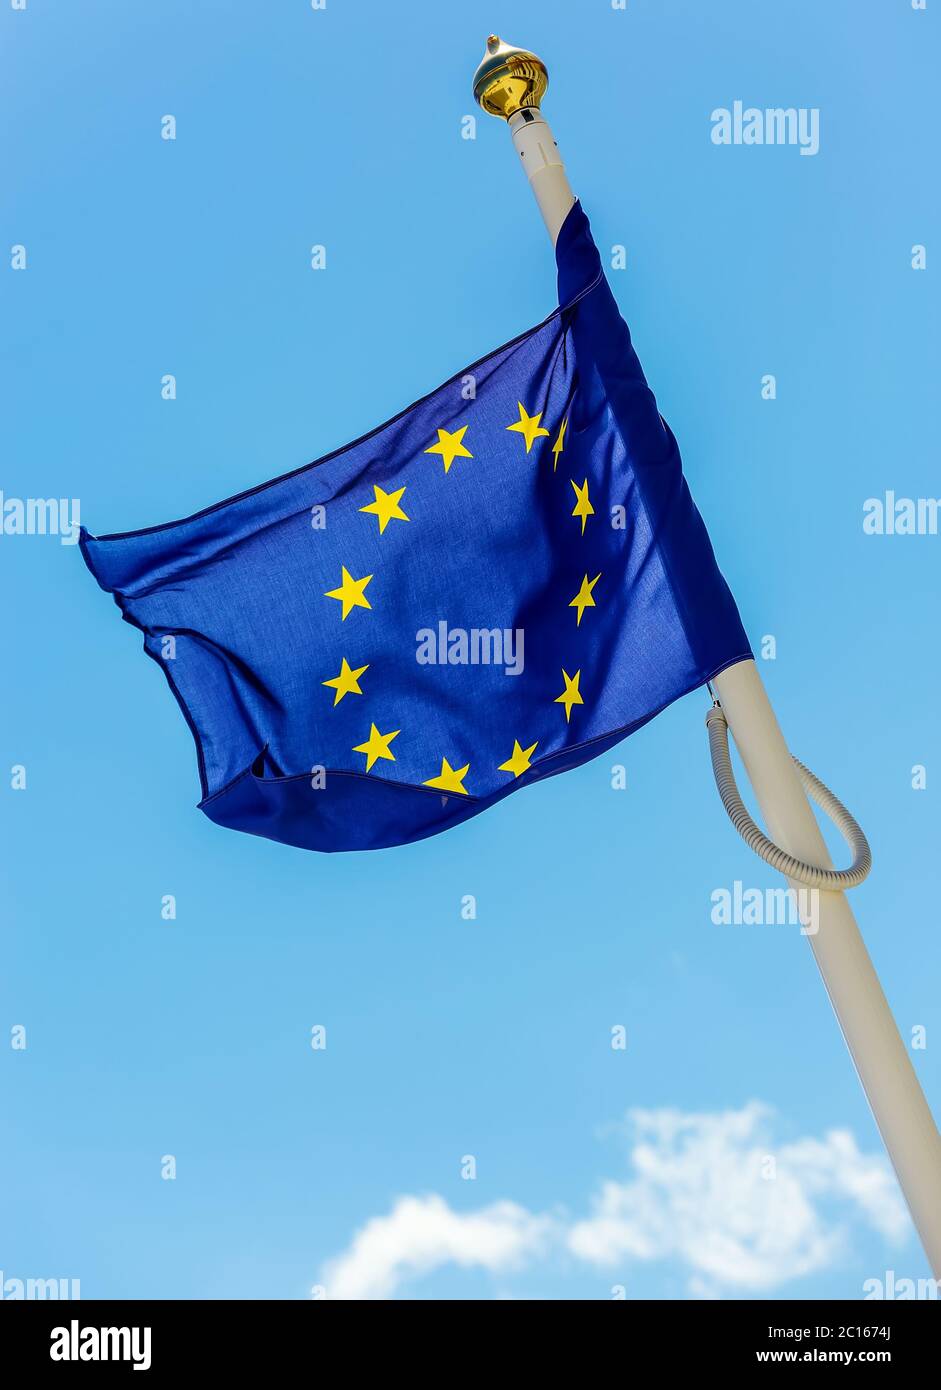 Drapeau de l'Union européenne avec des nuages sous-jacents symbolisant l'assombrissement Banque D'Images